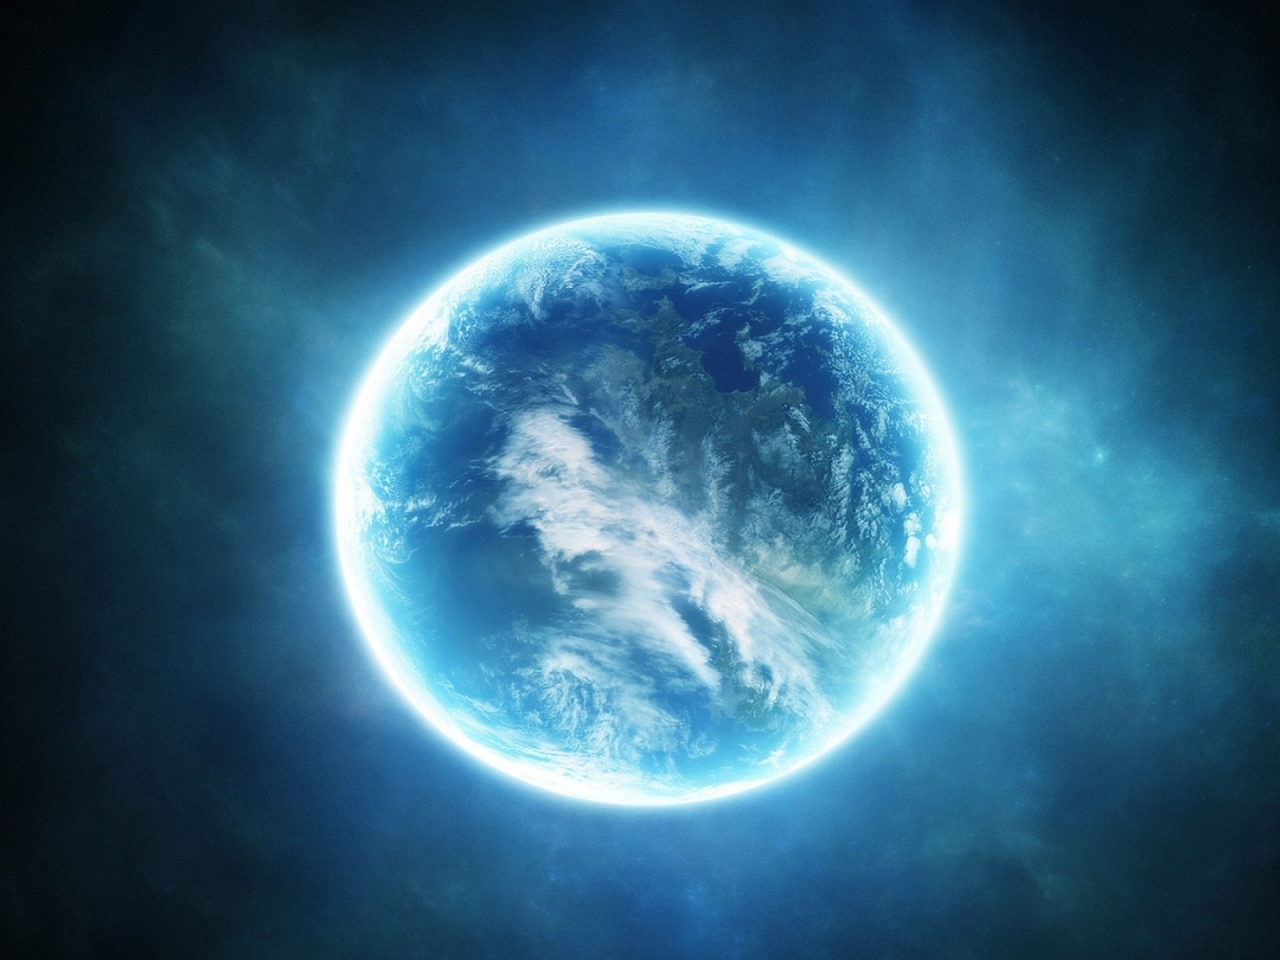 science fiction, light, planet, blue